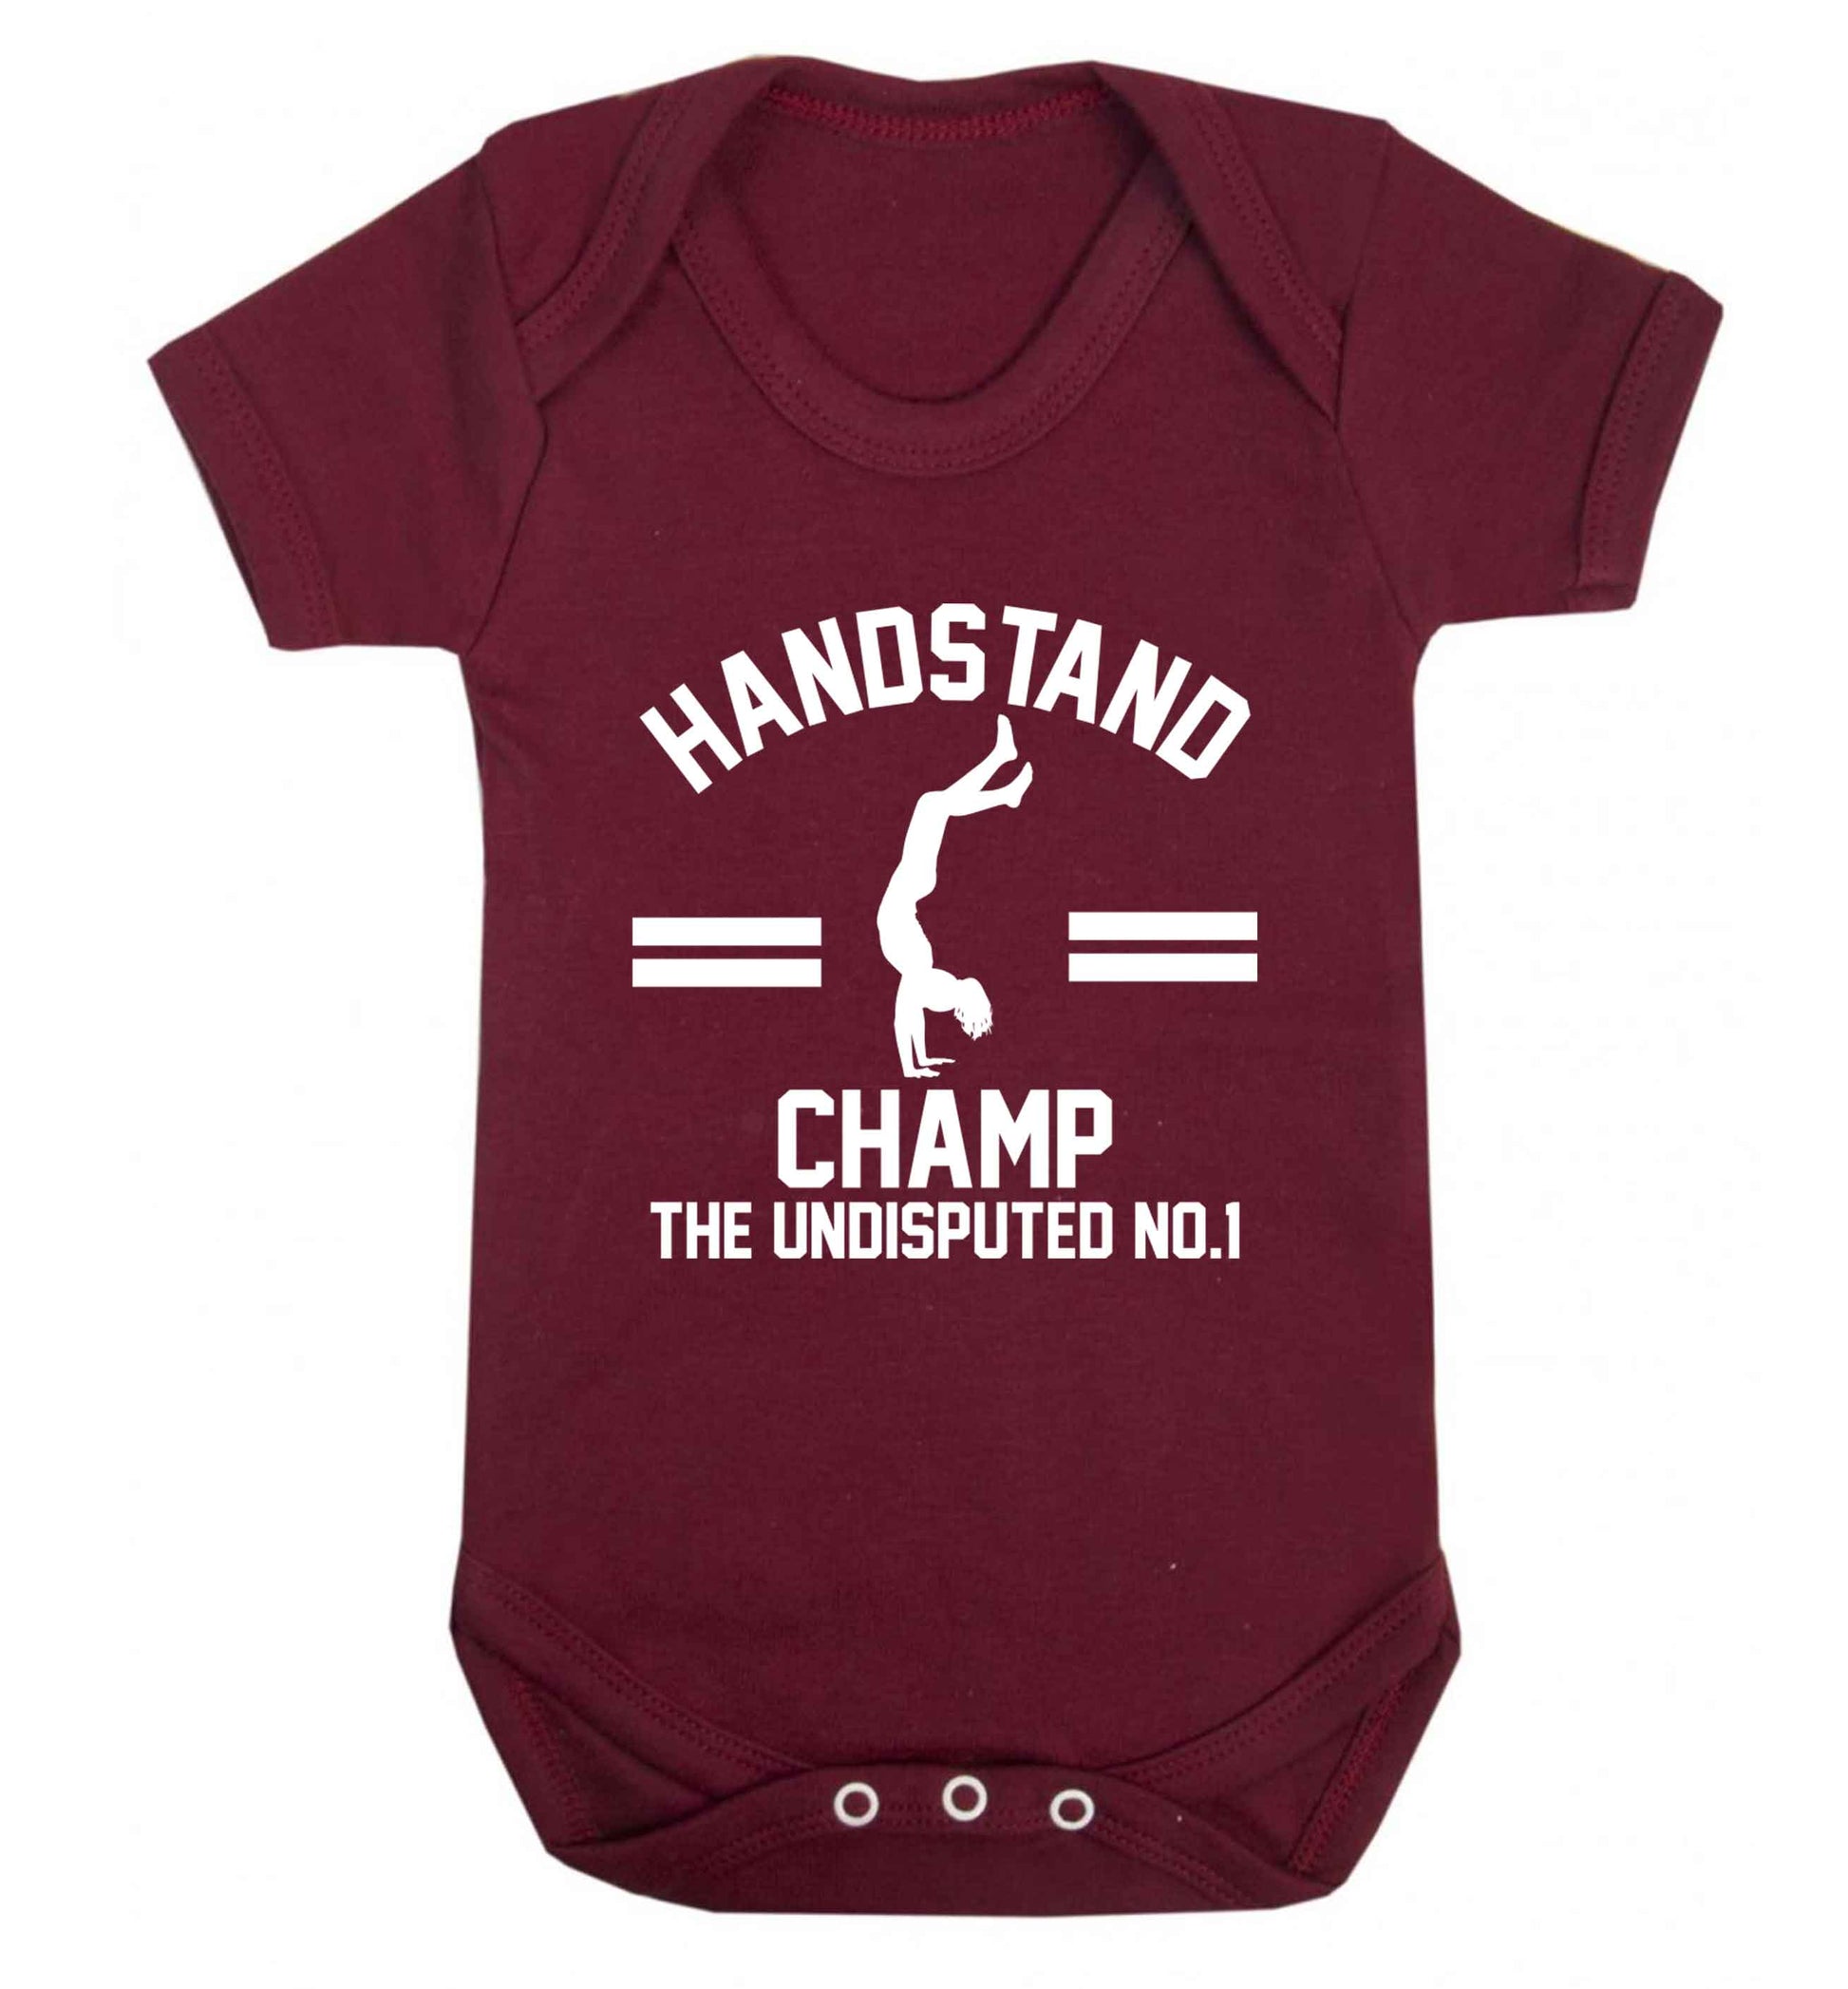 Undisputed handstand championship no.1  Baby Vest maroon 18-24 months